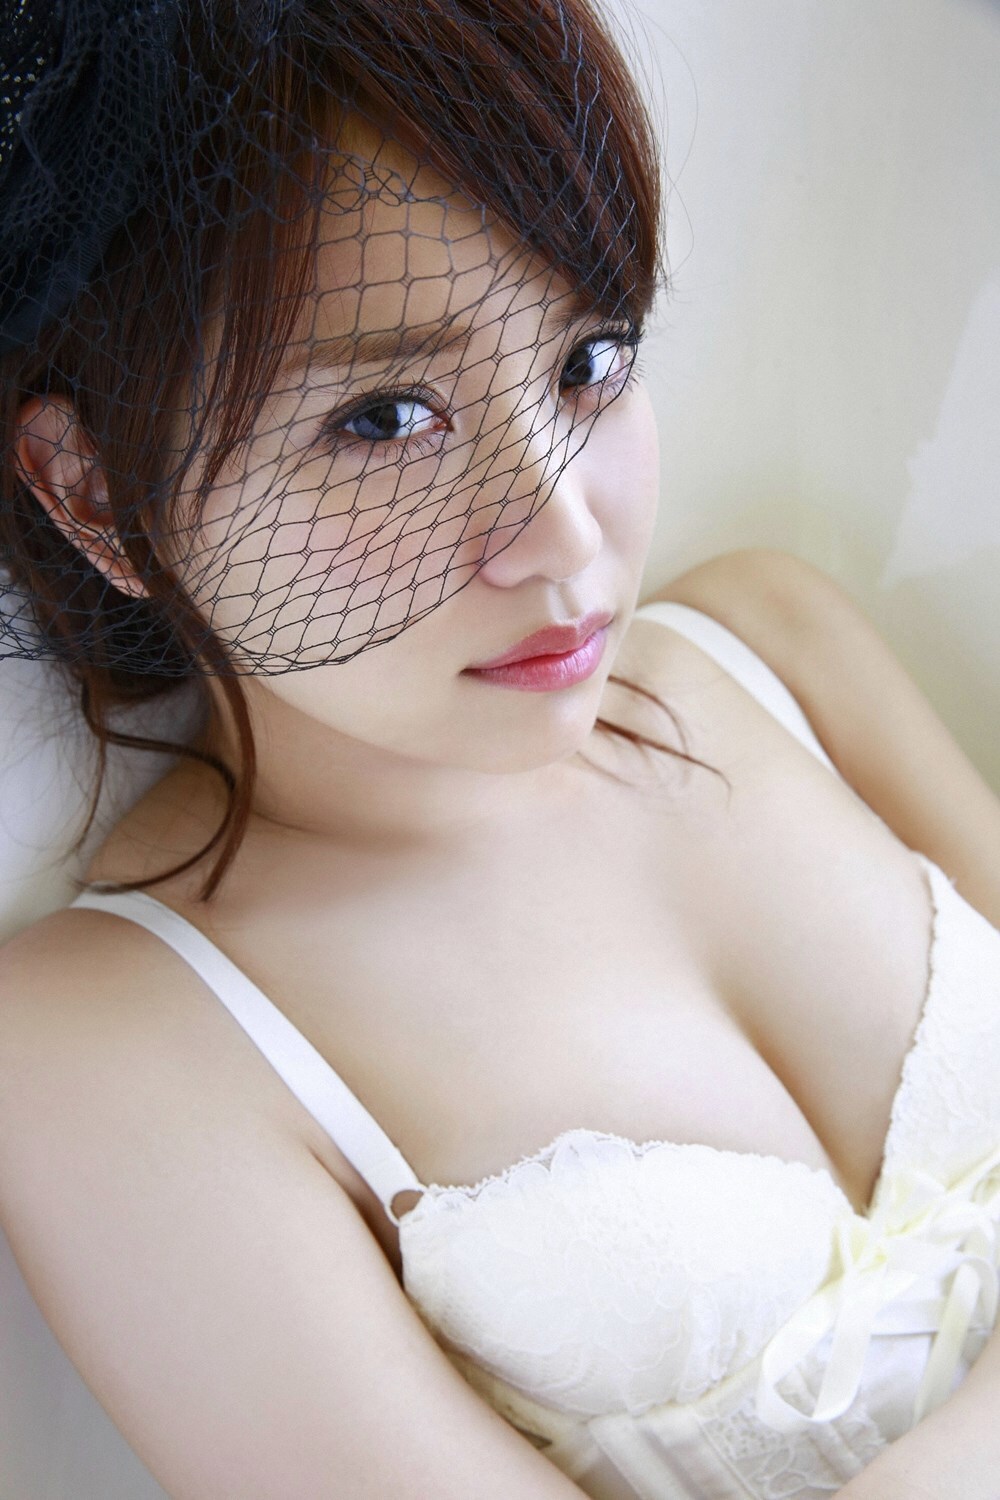 YS-Web-Vol.794 Mariya Nagao 永尾まりや - Sexy Eyes